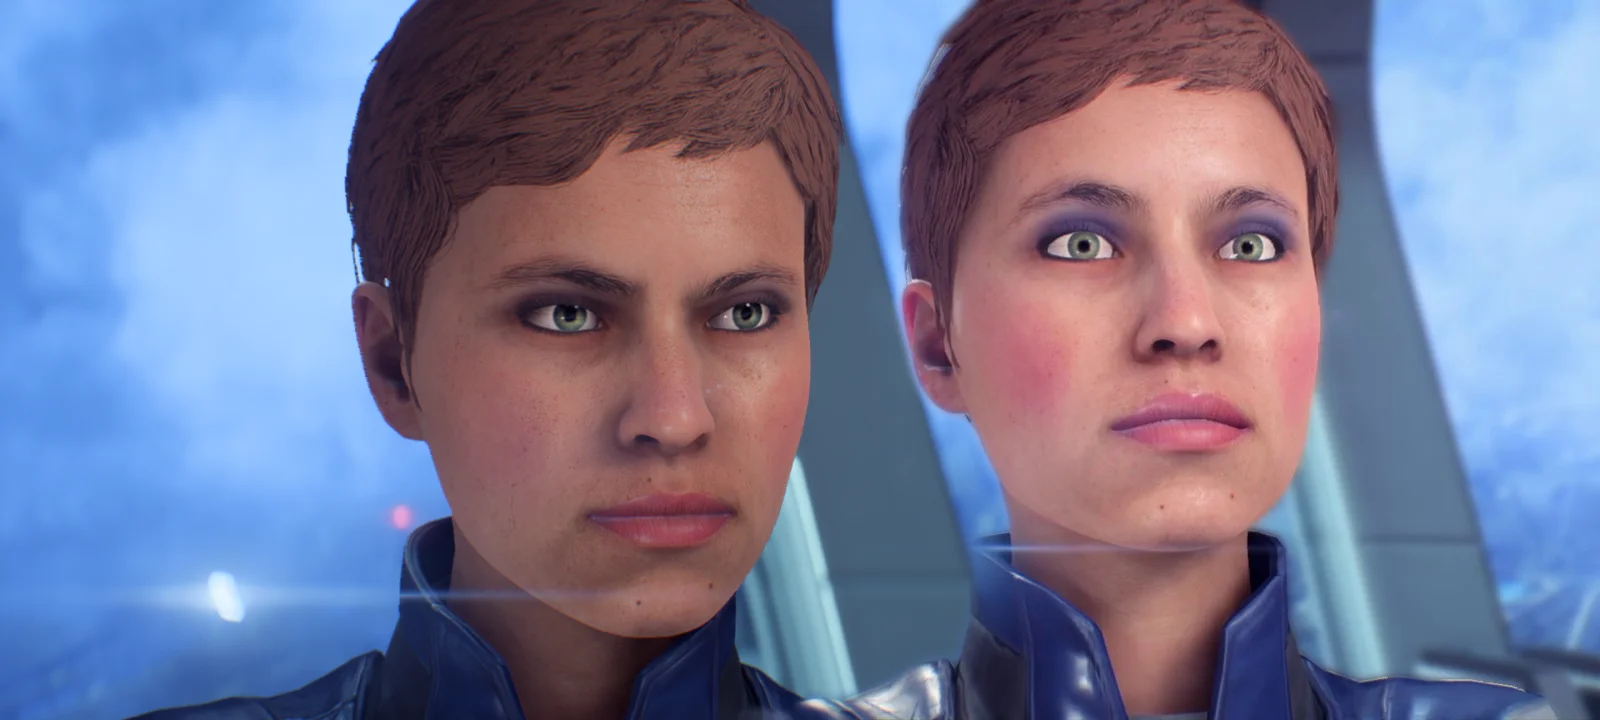 Патч 1.05 для Mass Effect: Andromeda исправил ужасные глаза персонажей - фото 1